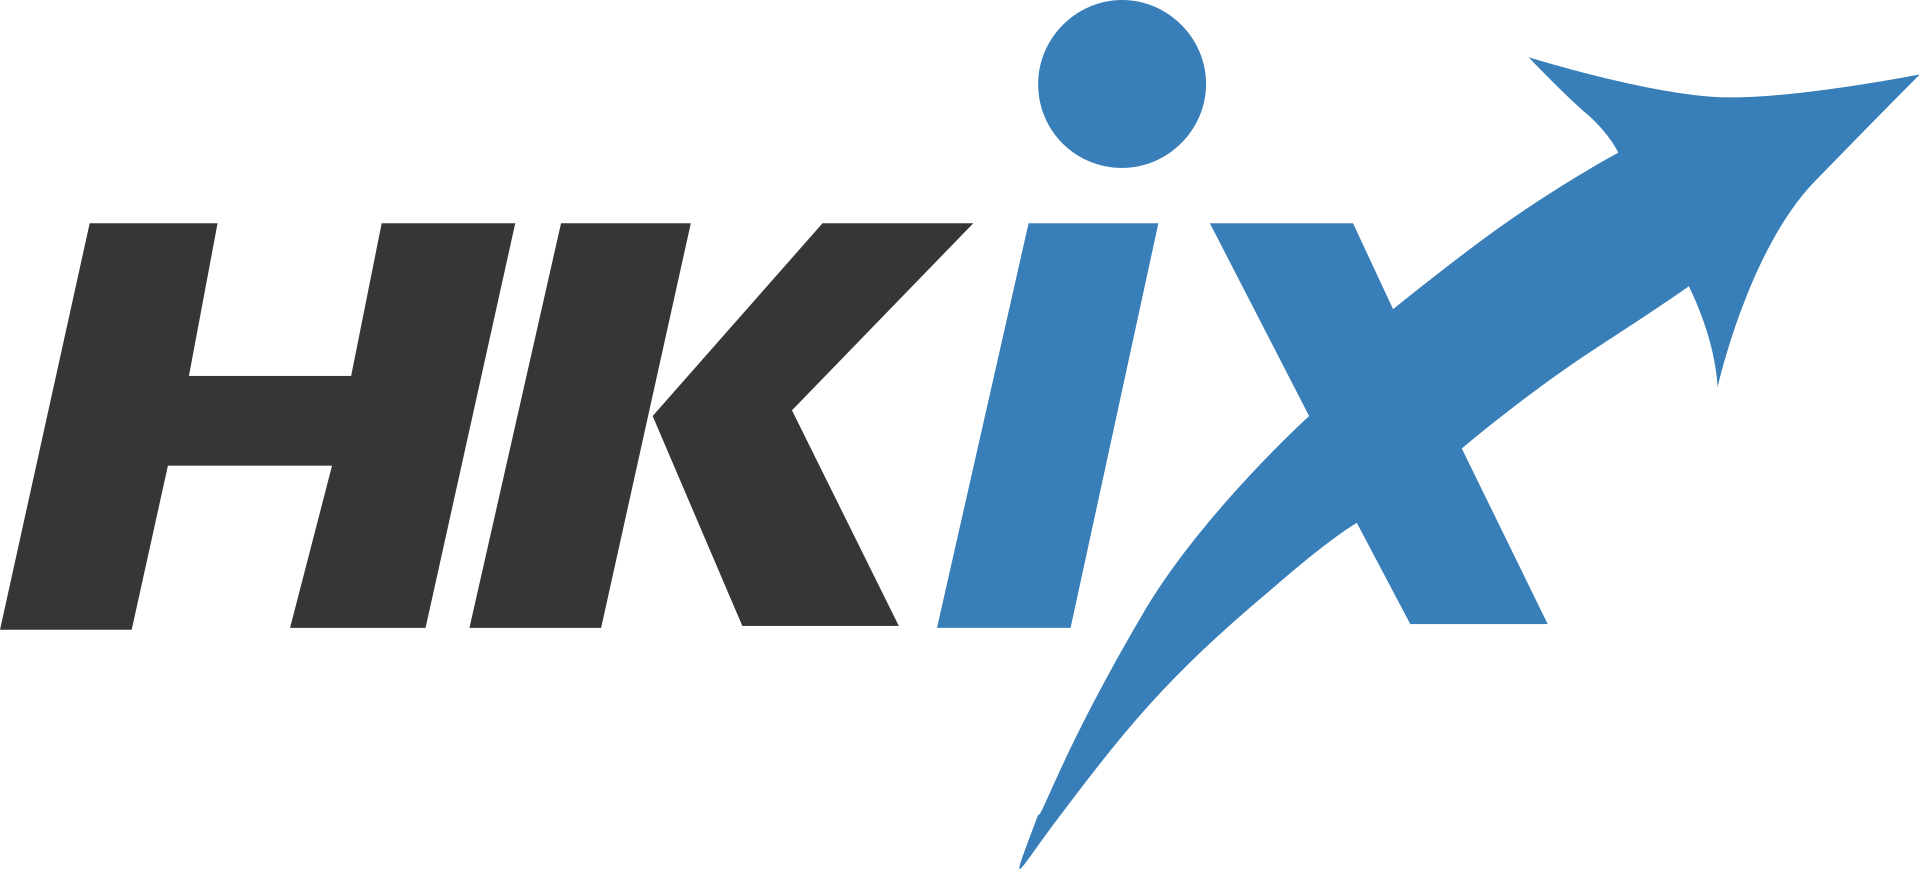 HKIX logo